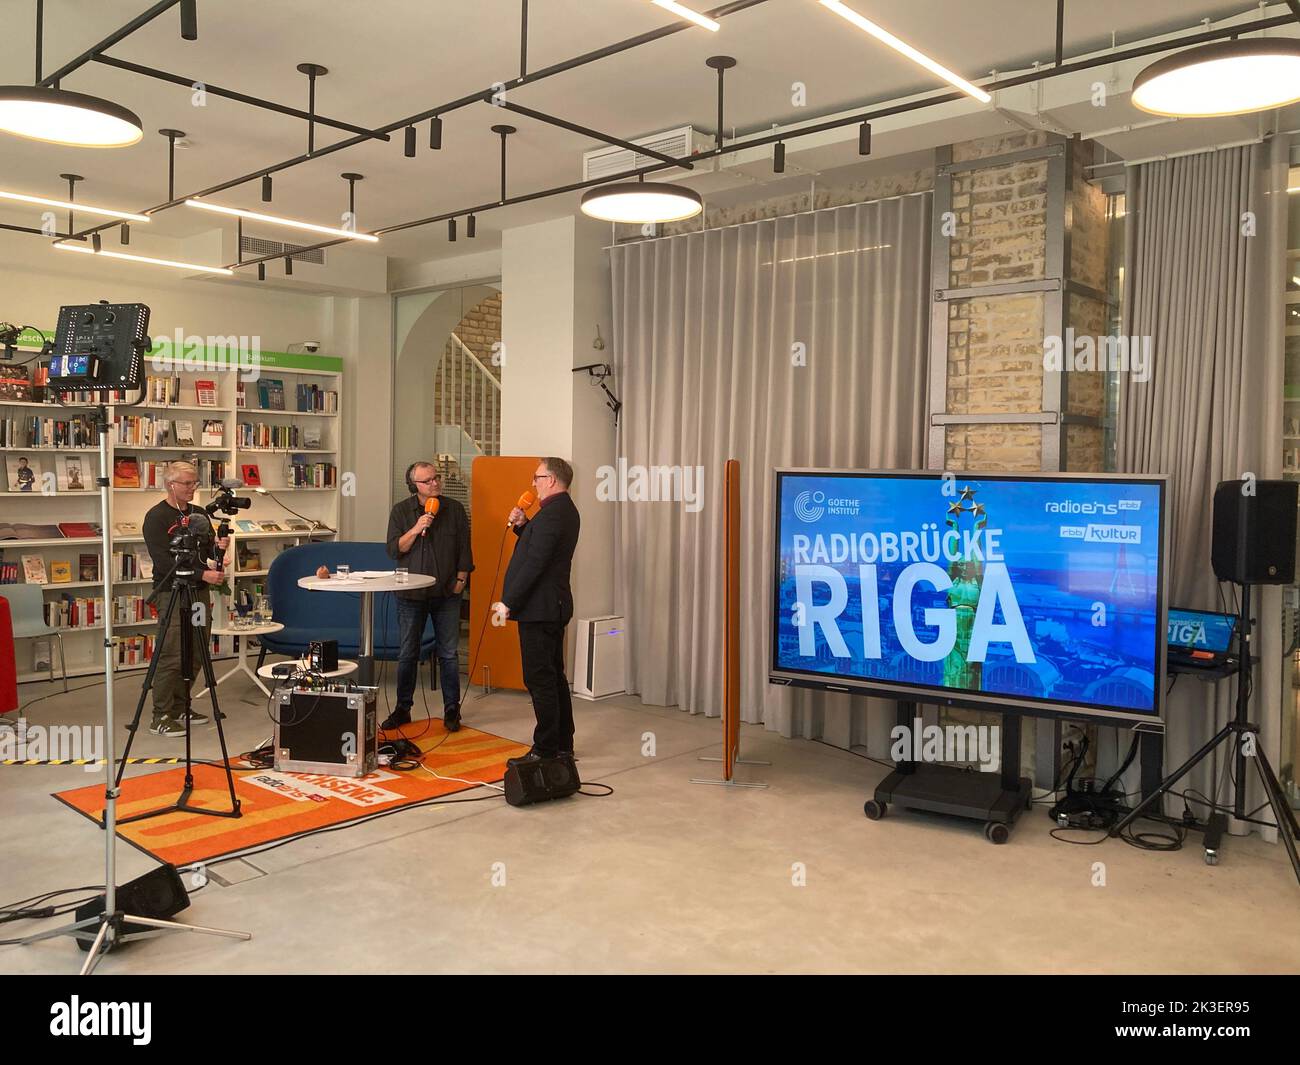 26 de septiembre de 2022, Letonia, Riga: El presentador de RBB Radio Eins  Knut Elstermann (l) se encuentra en la biblioteca del Goethe-Institut Riga  durante una transmisión en directo y habla con